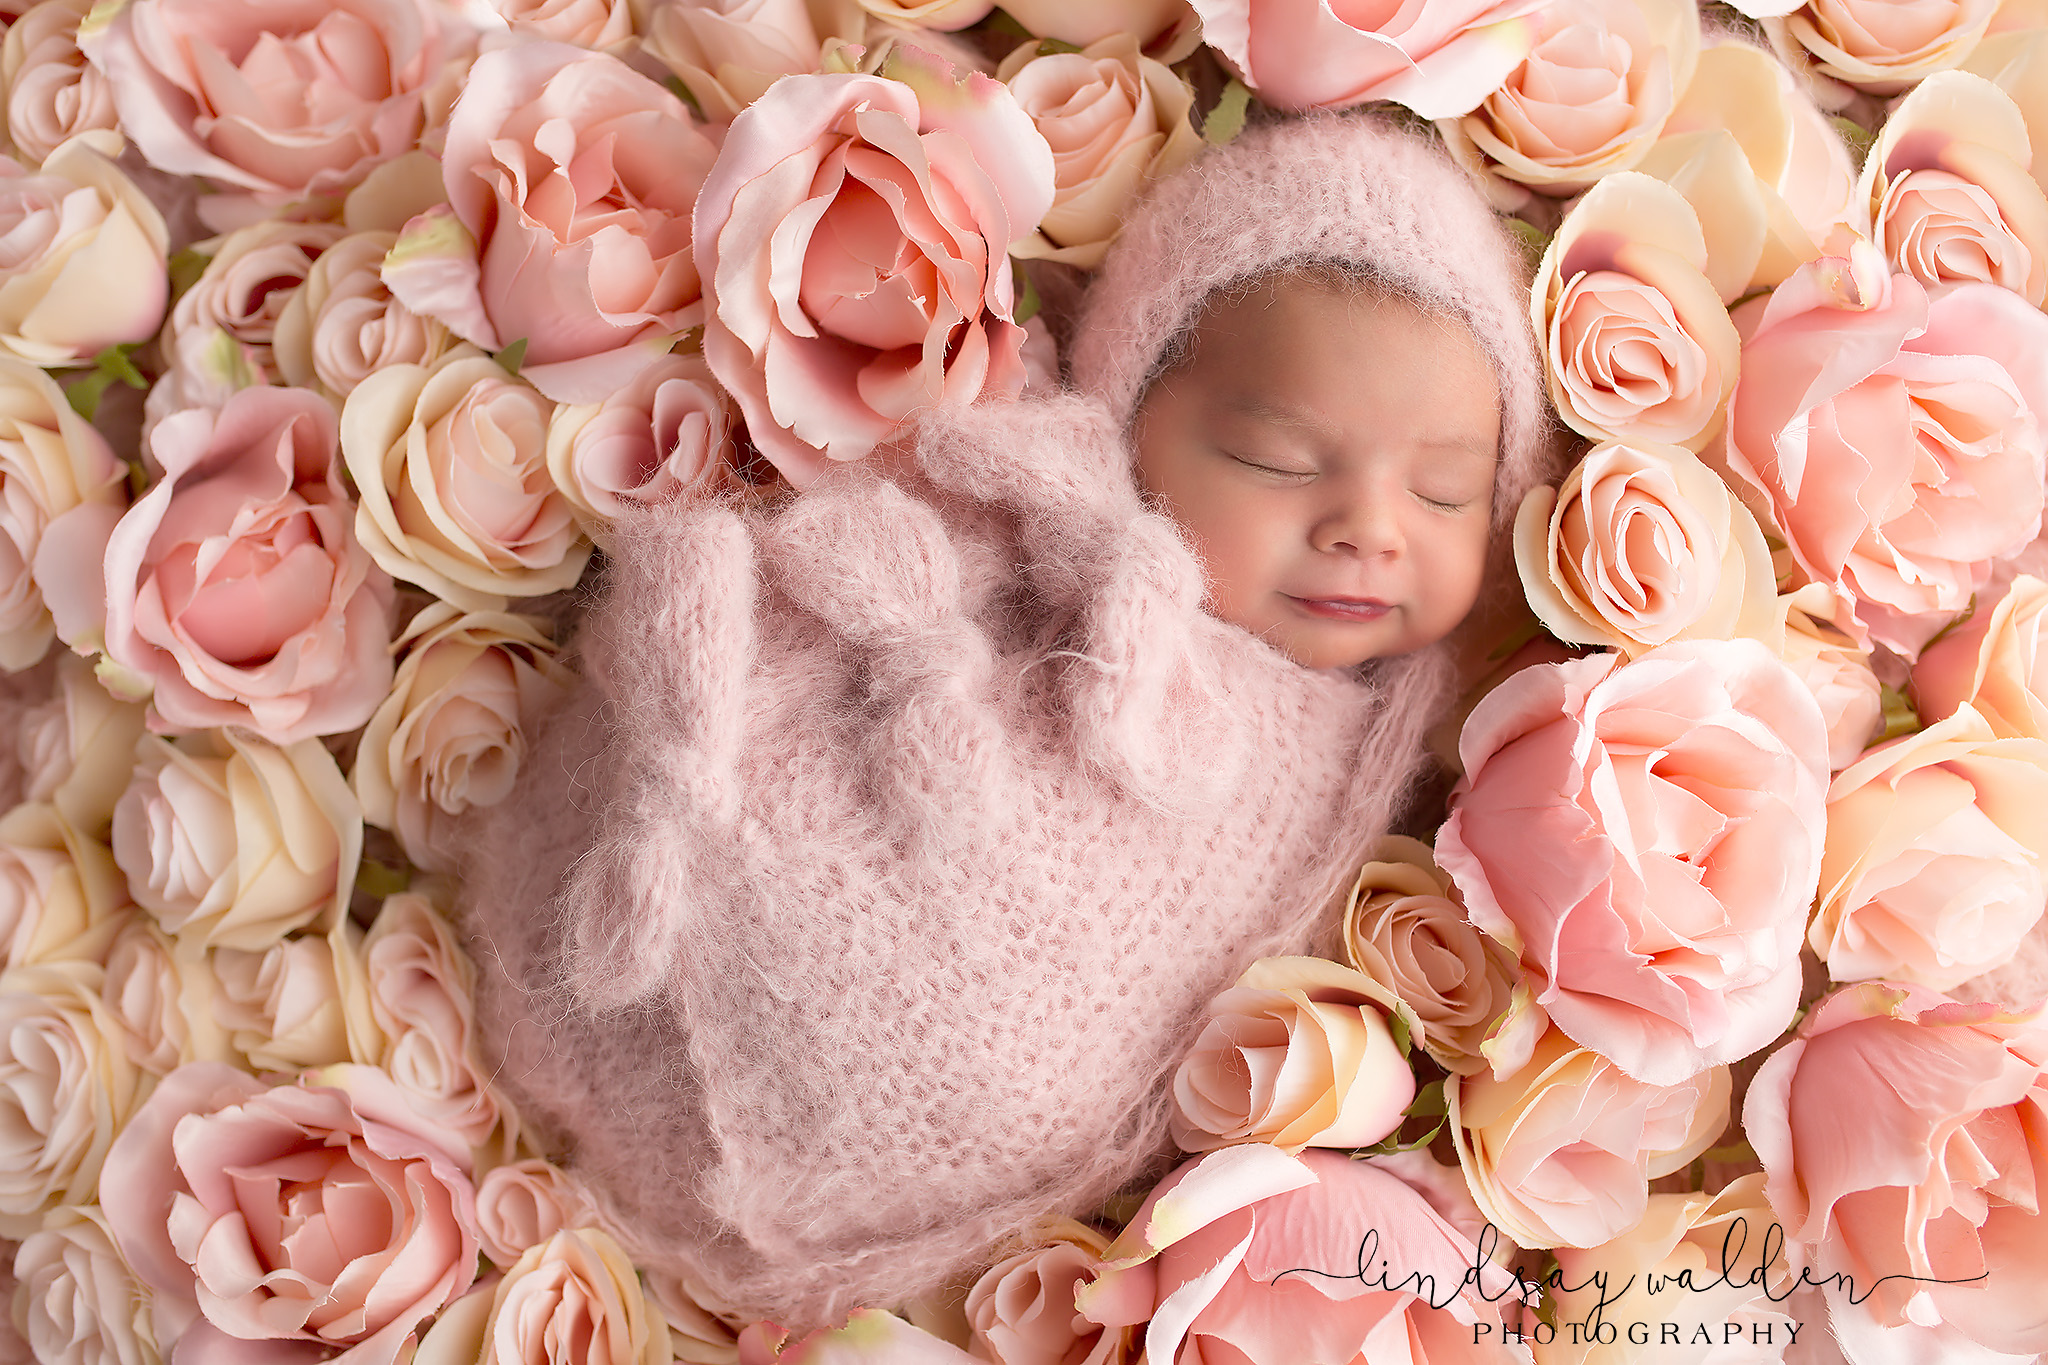 30-newborn-photography-backdrops-eco-and-creative-newborn-backdrops